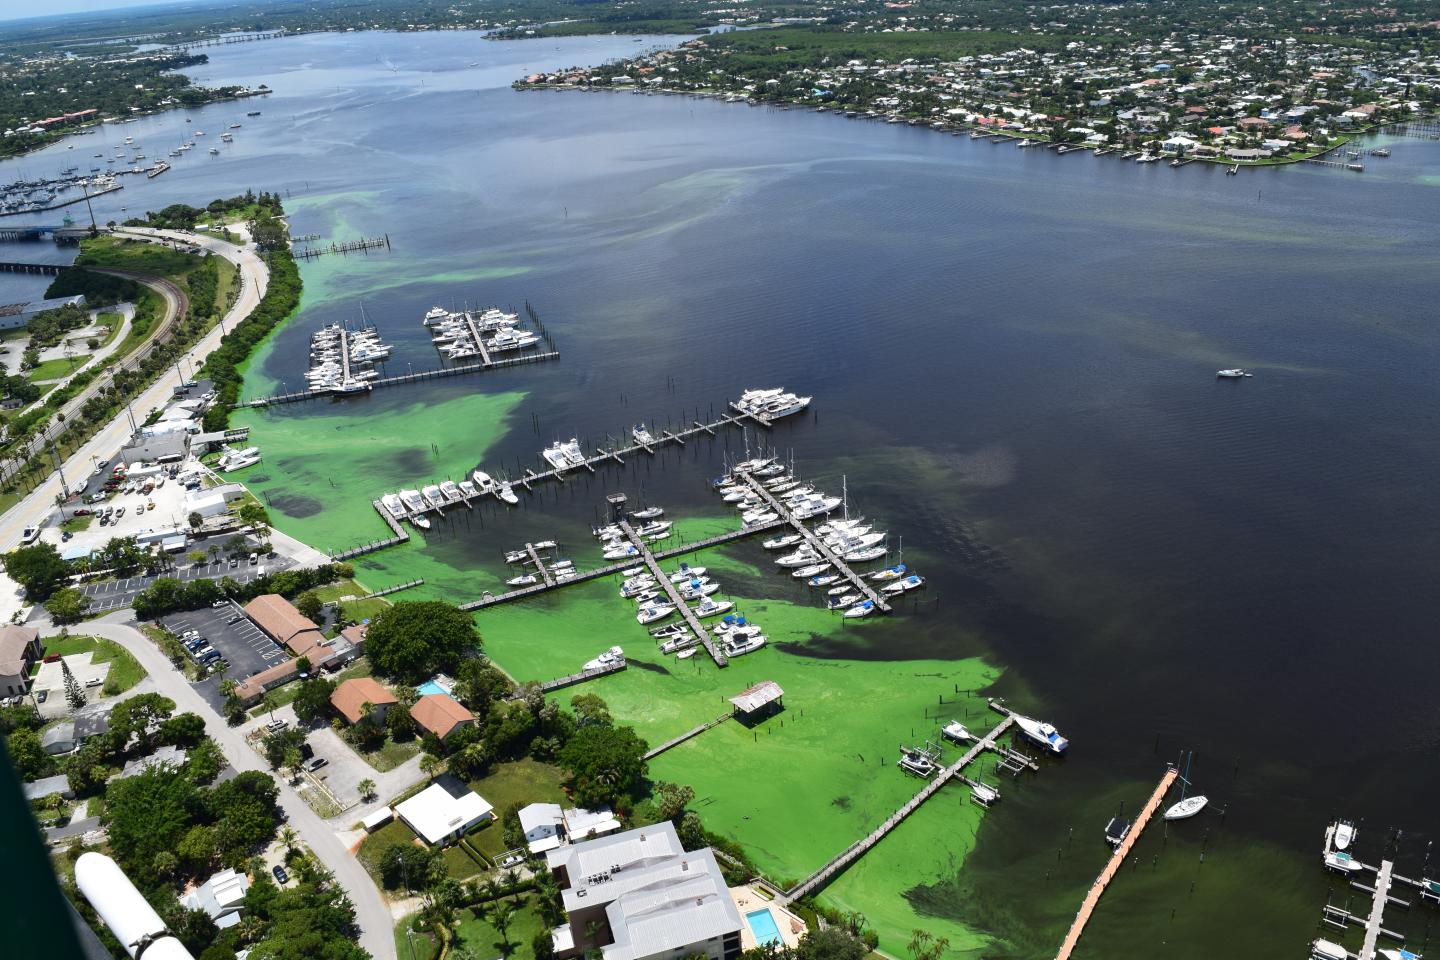 Southeast Florida's St. Lucie Estuary